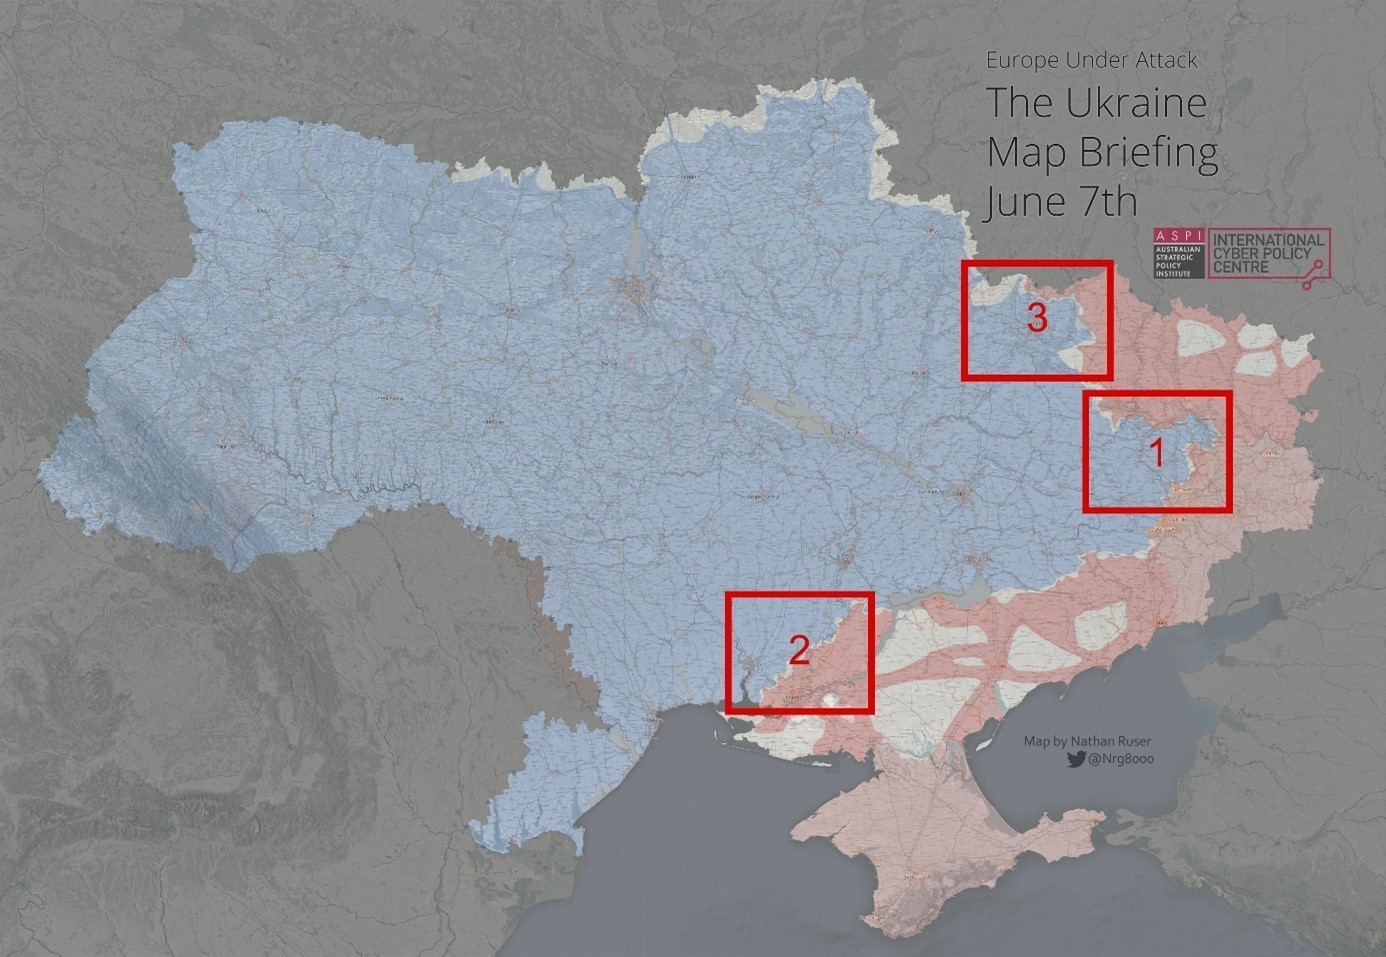 Ukraine Map 1 Briefing